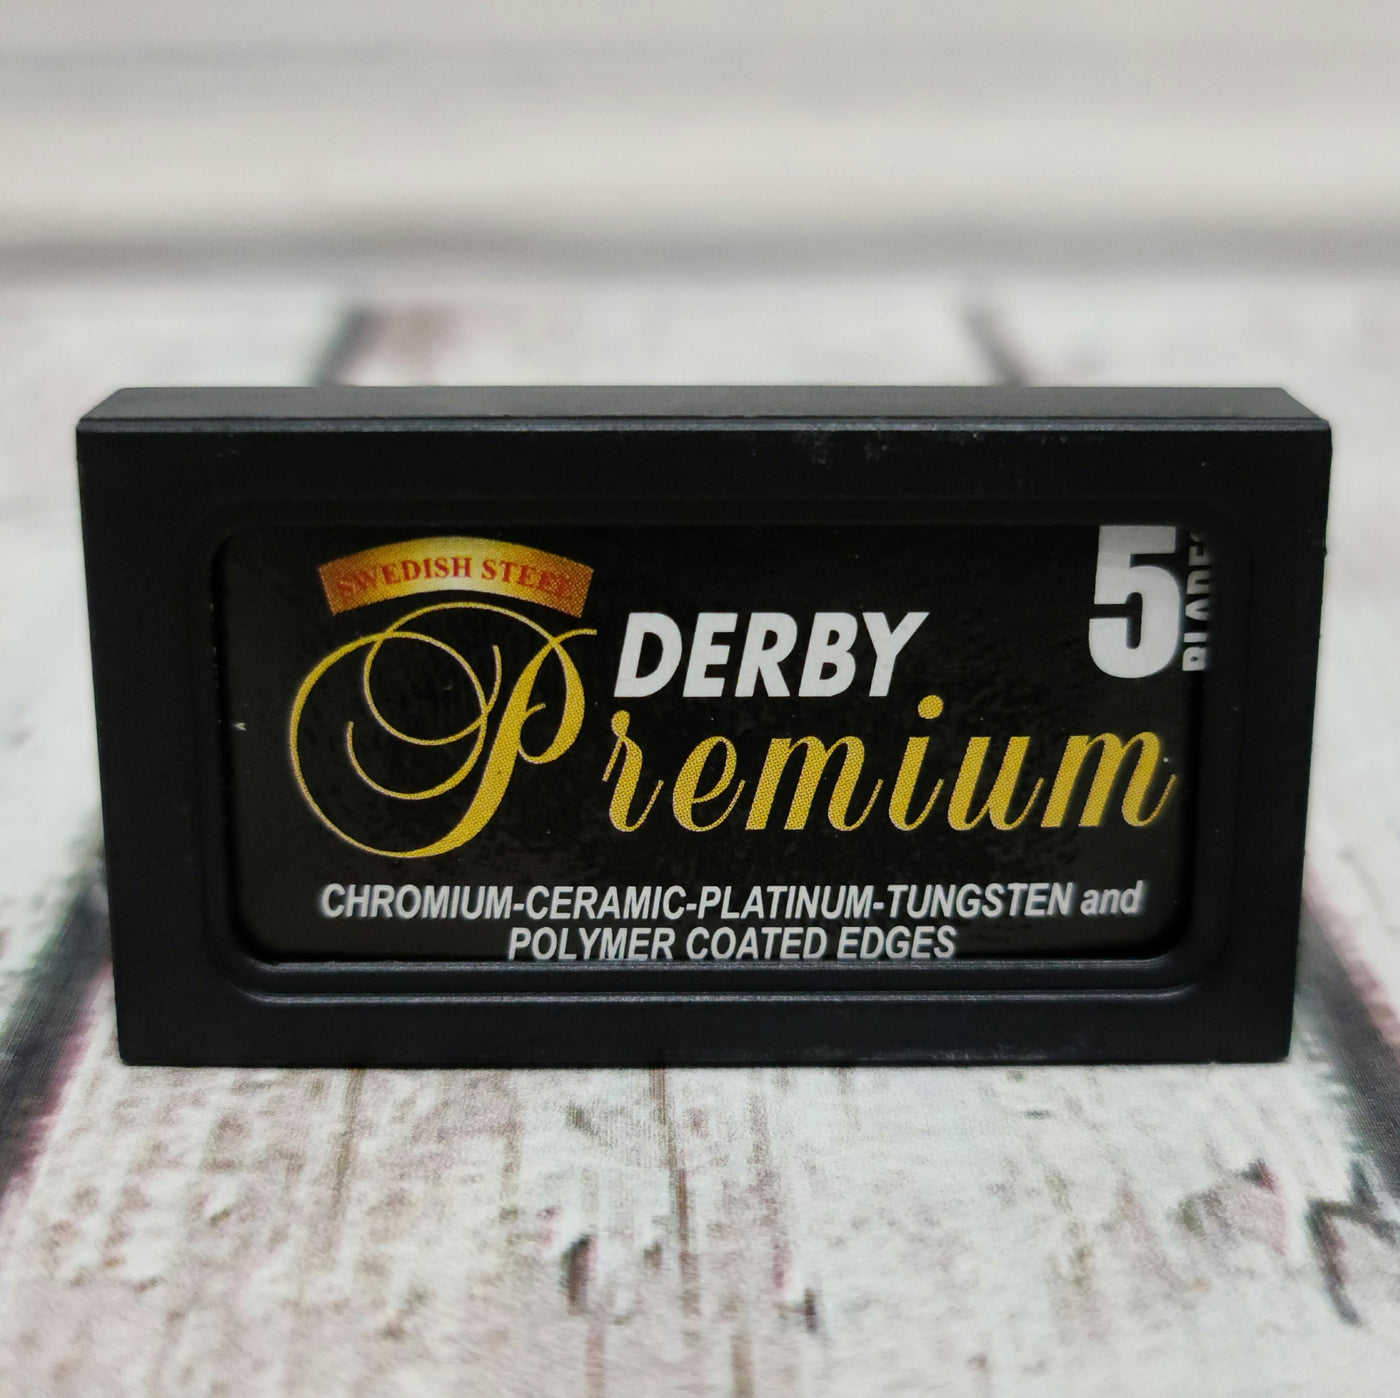 Derby Premium Double Edge Safety Razor Blades - 5 pack